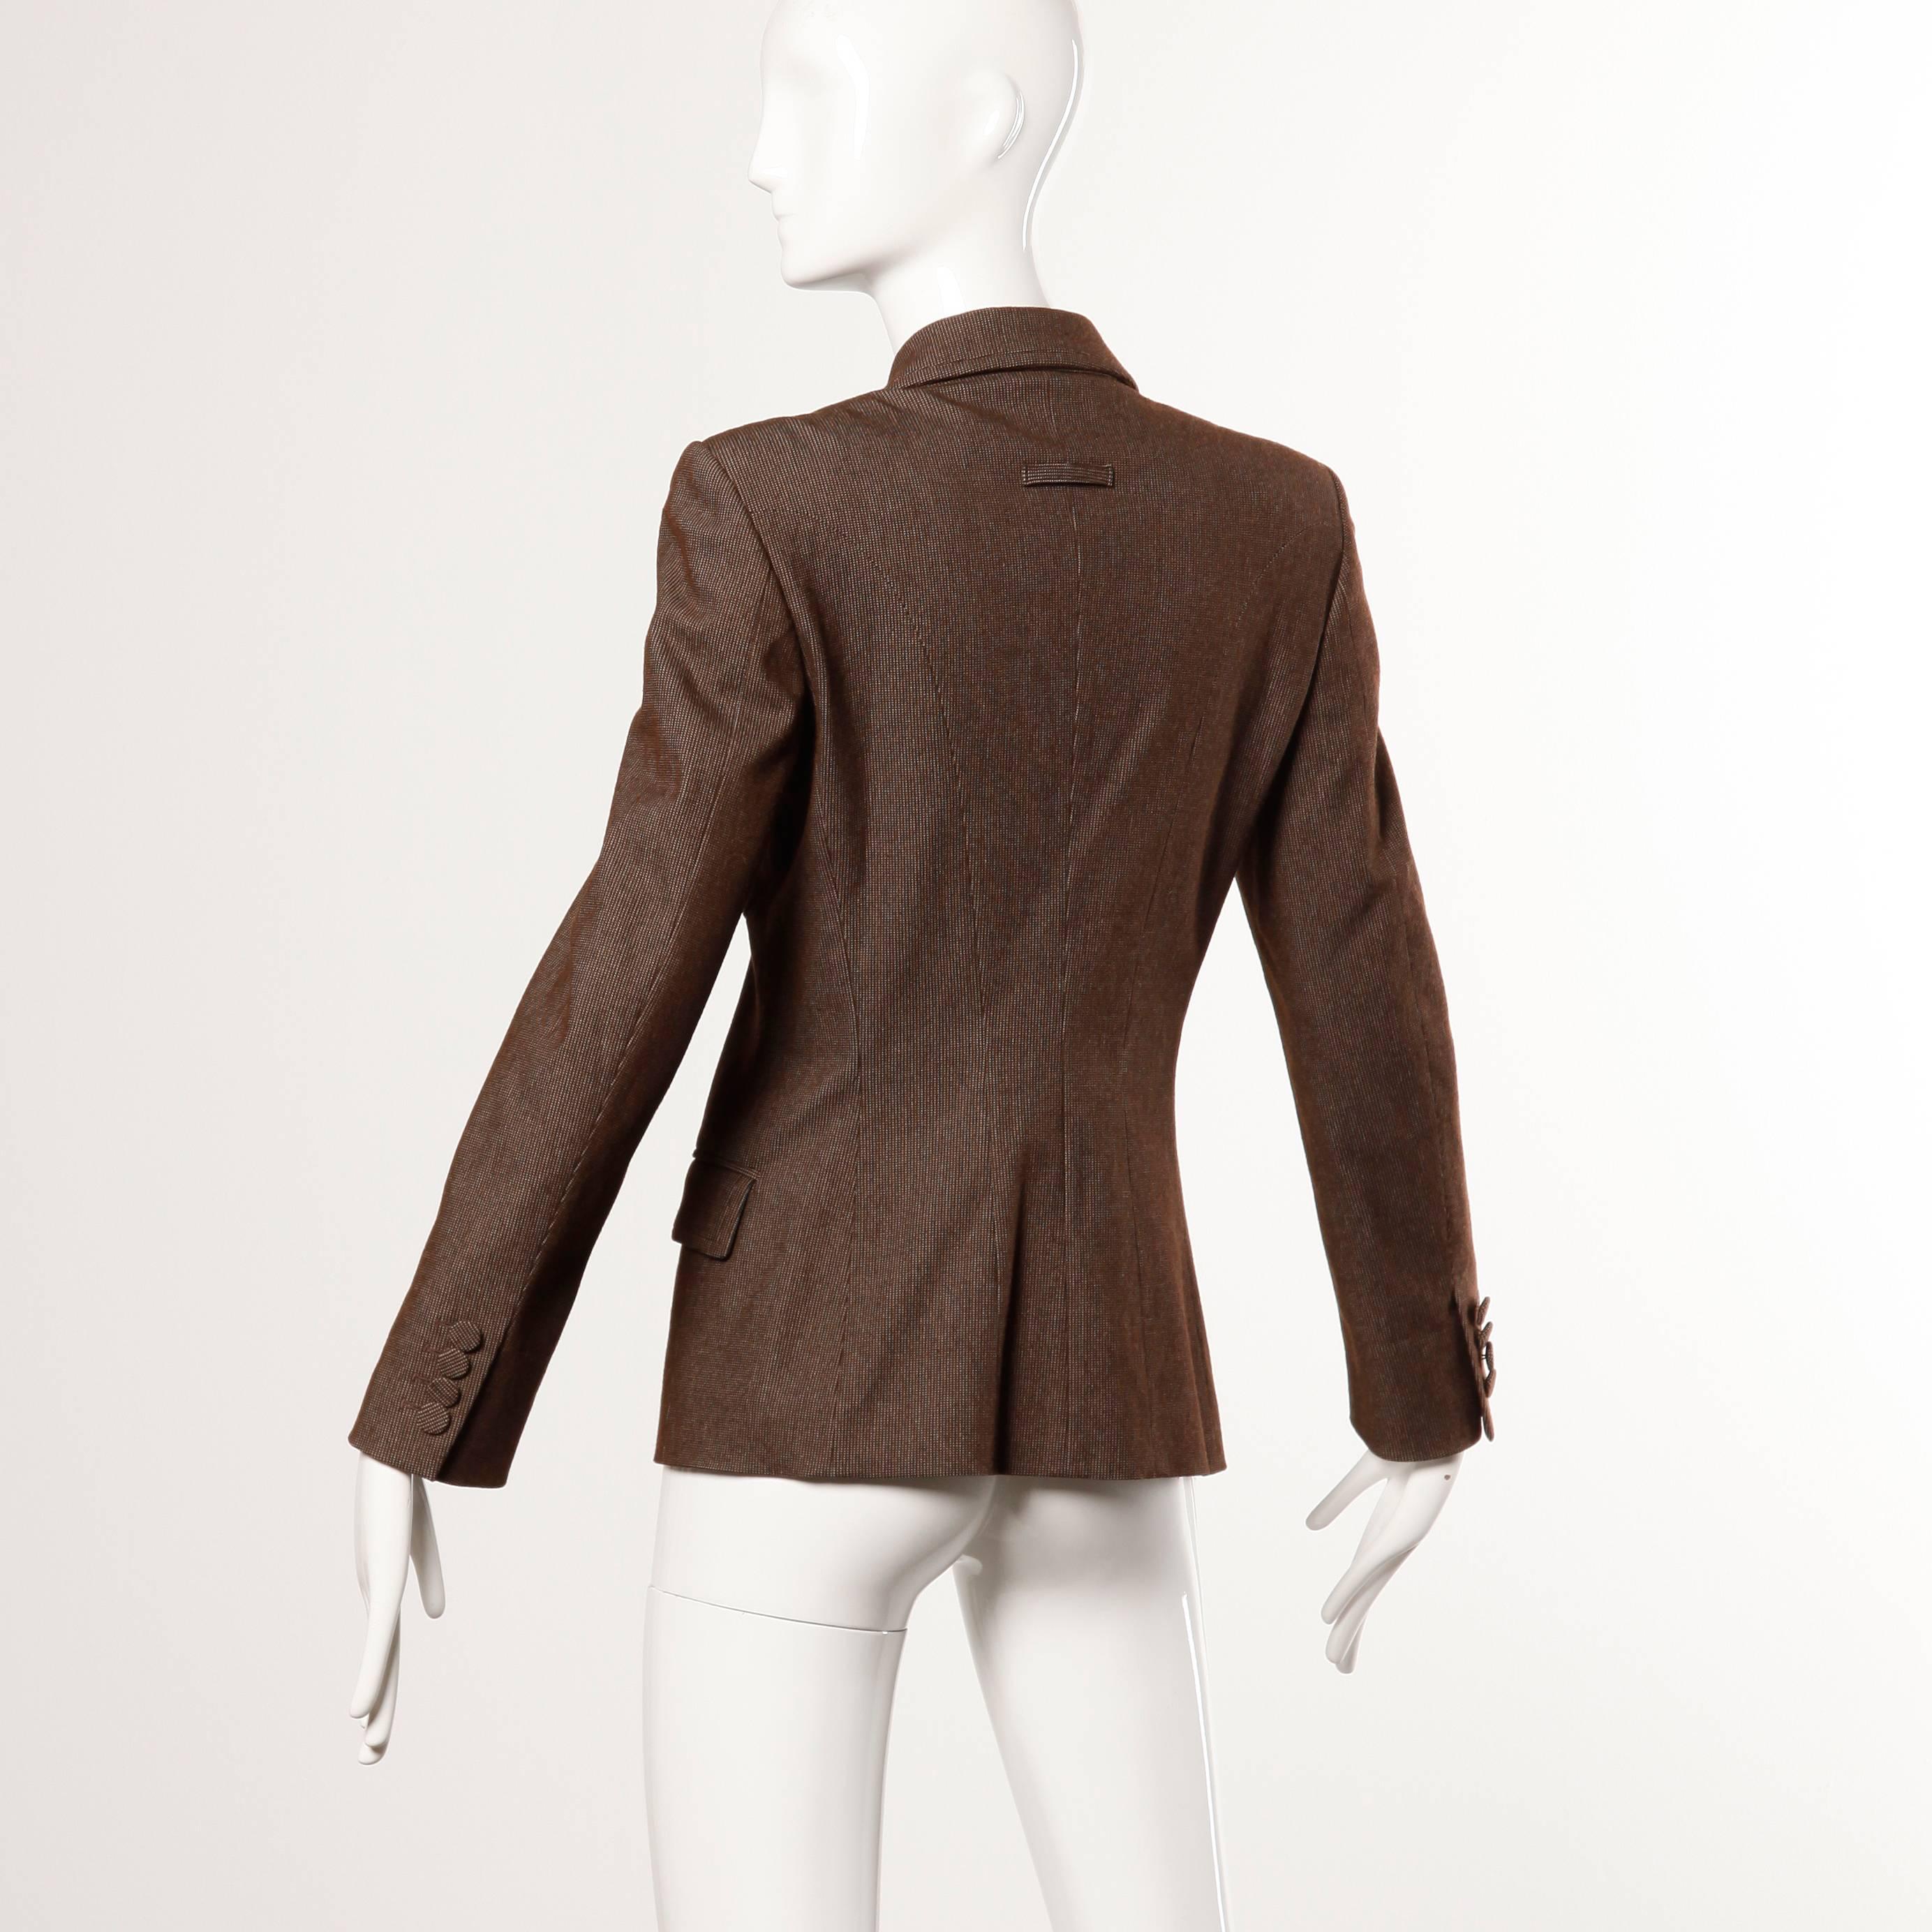 Black Jean Paul Gaultier Double Breasted Avant Garde Blazer Jacket